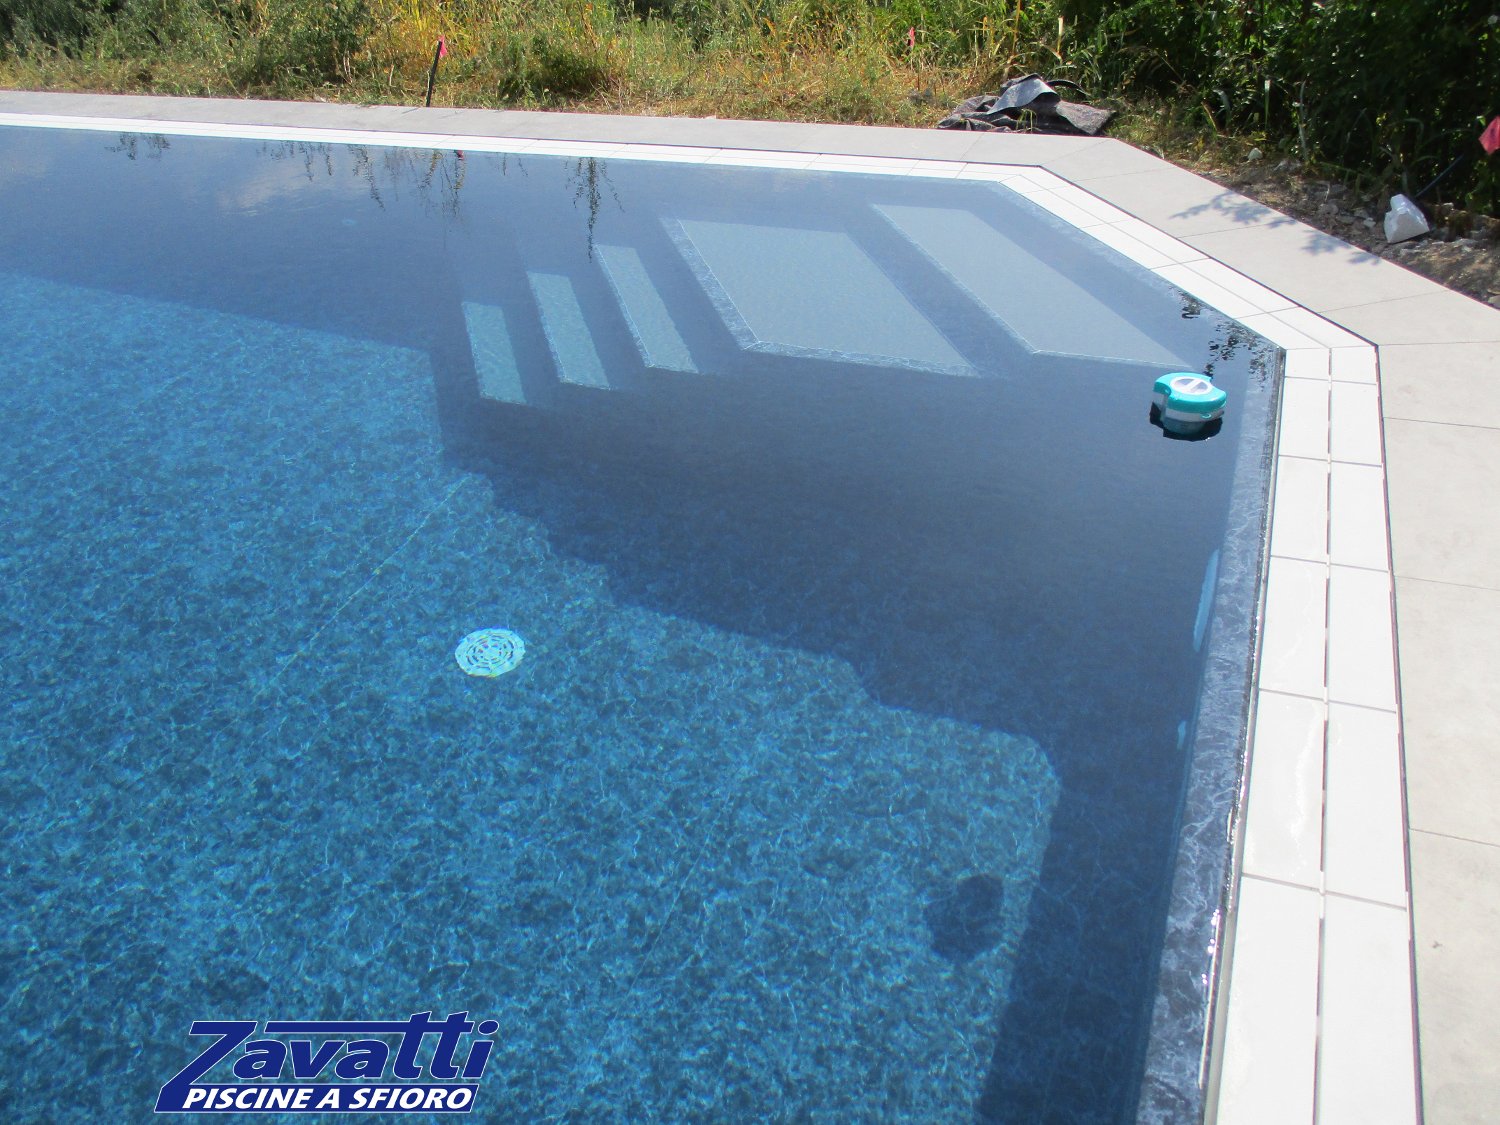 Dettaglio piscina sfioro con rivestimento marmorizzato e scala bicolore interna